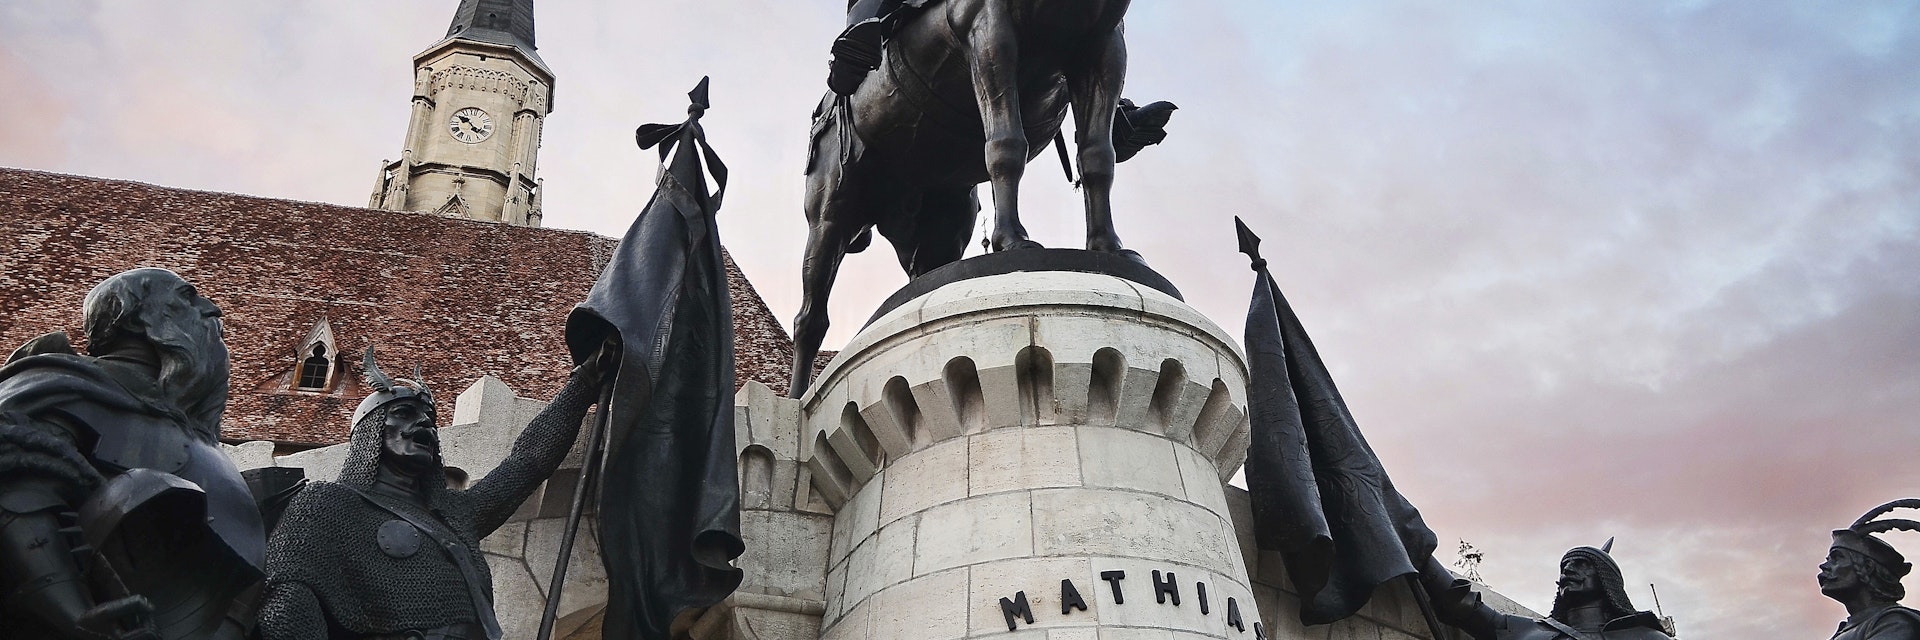 Mathias Rex statue